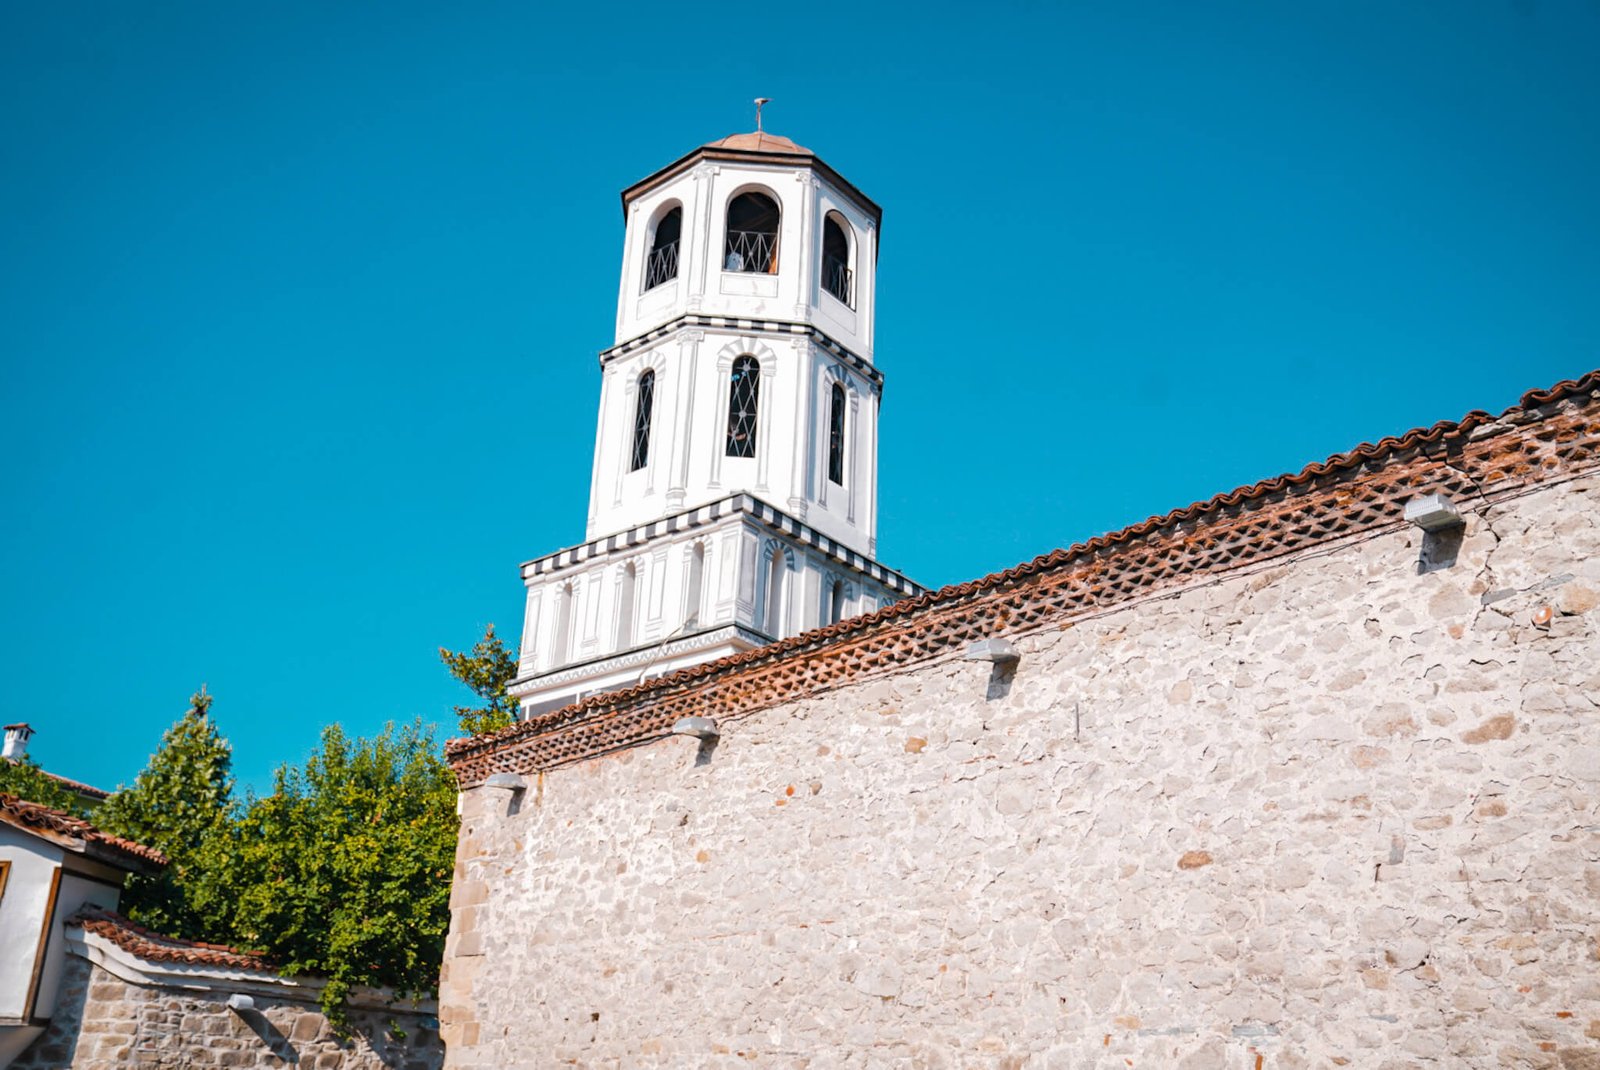 Church in Plovdiv, Bulgaria